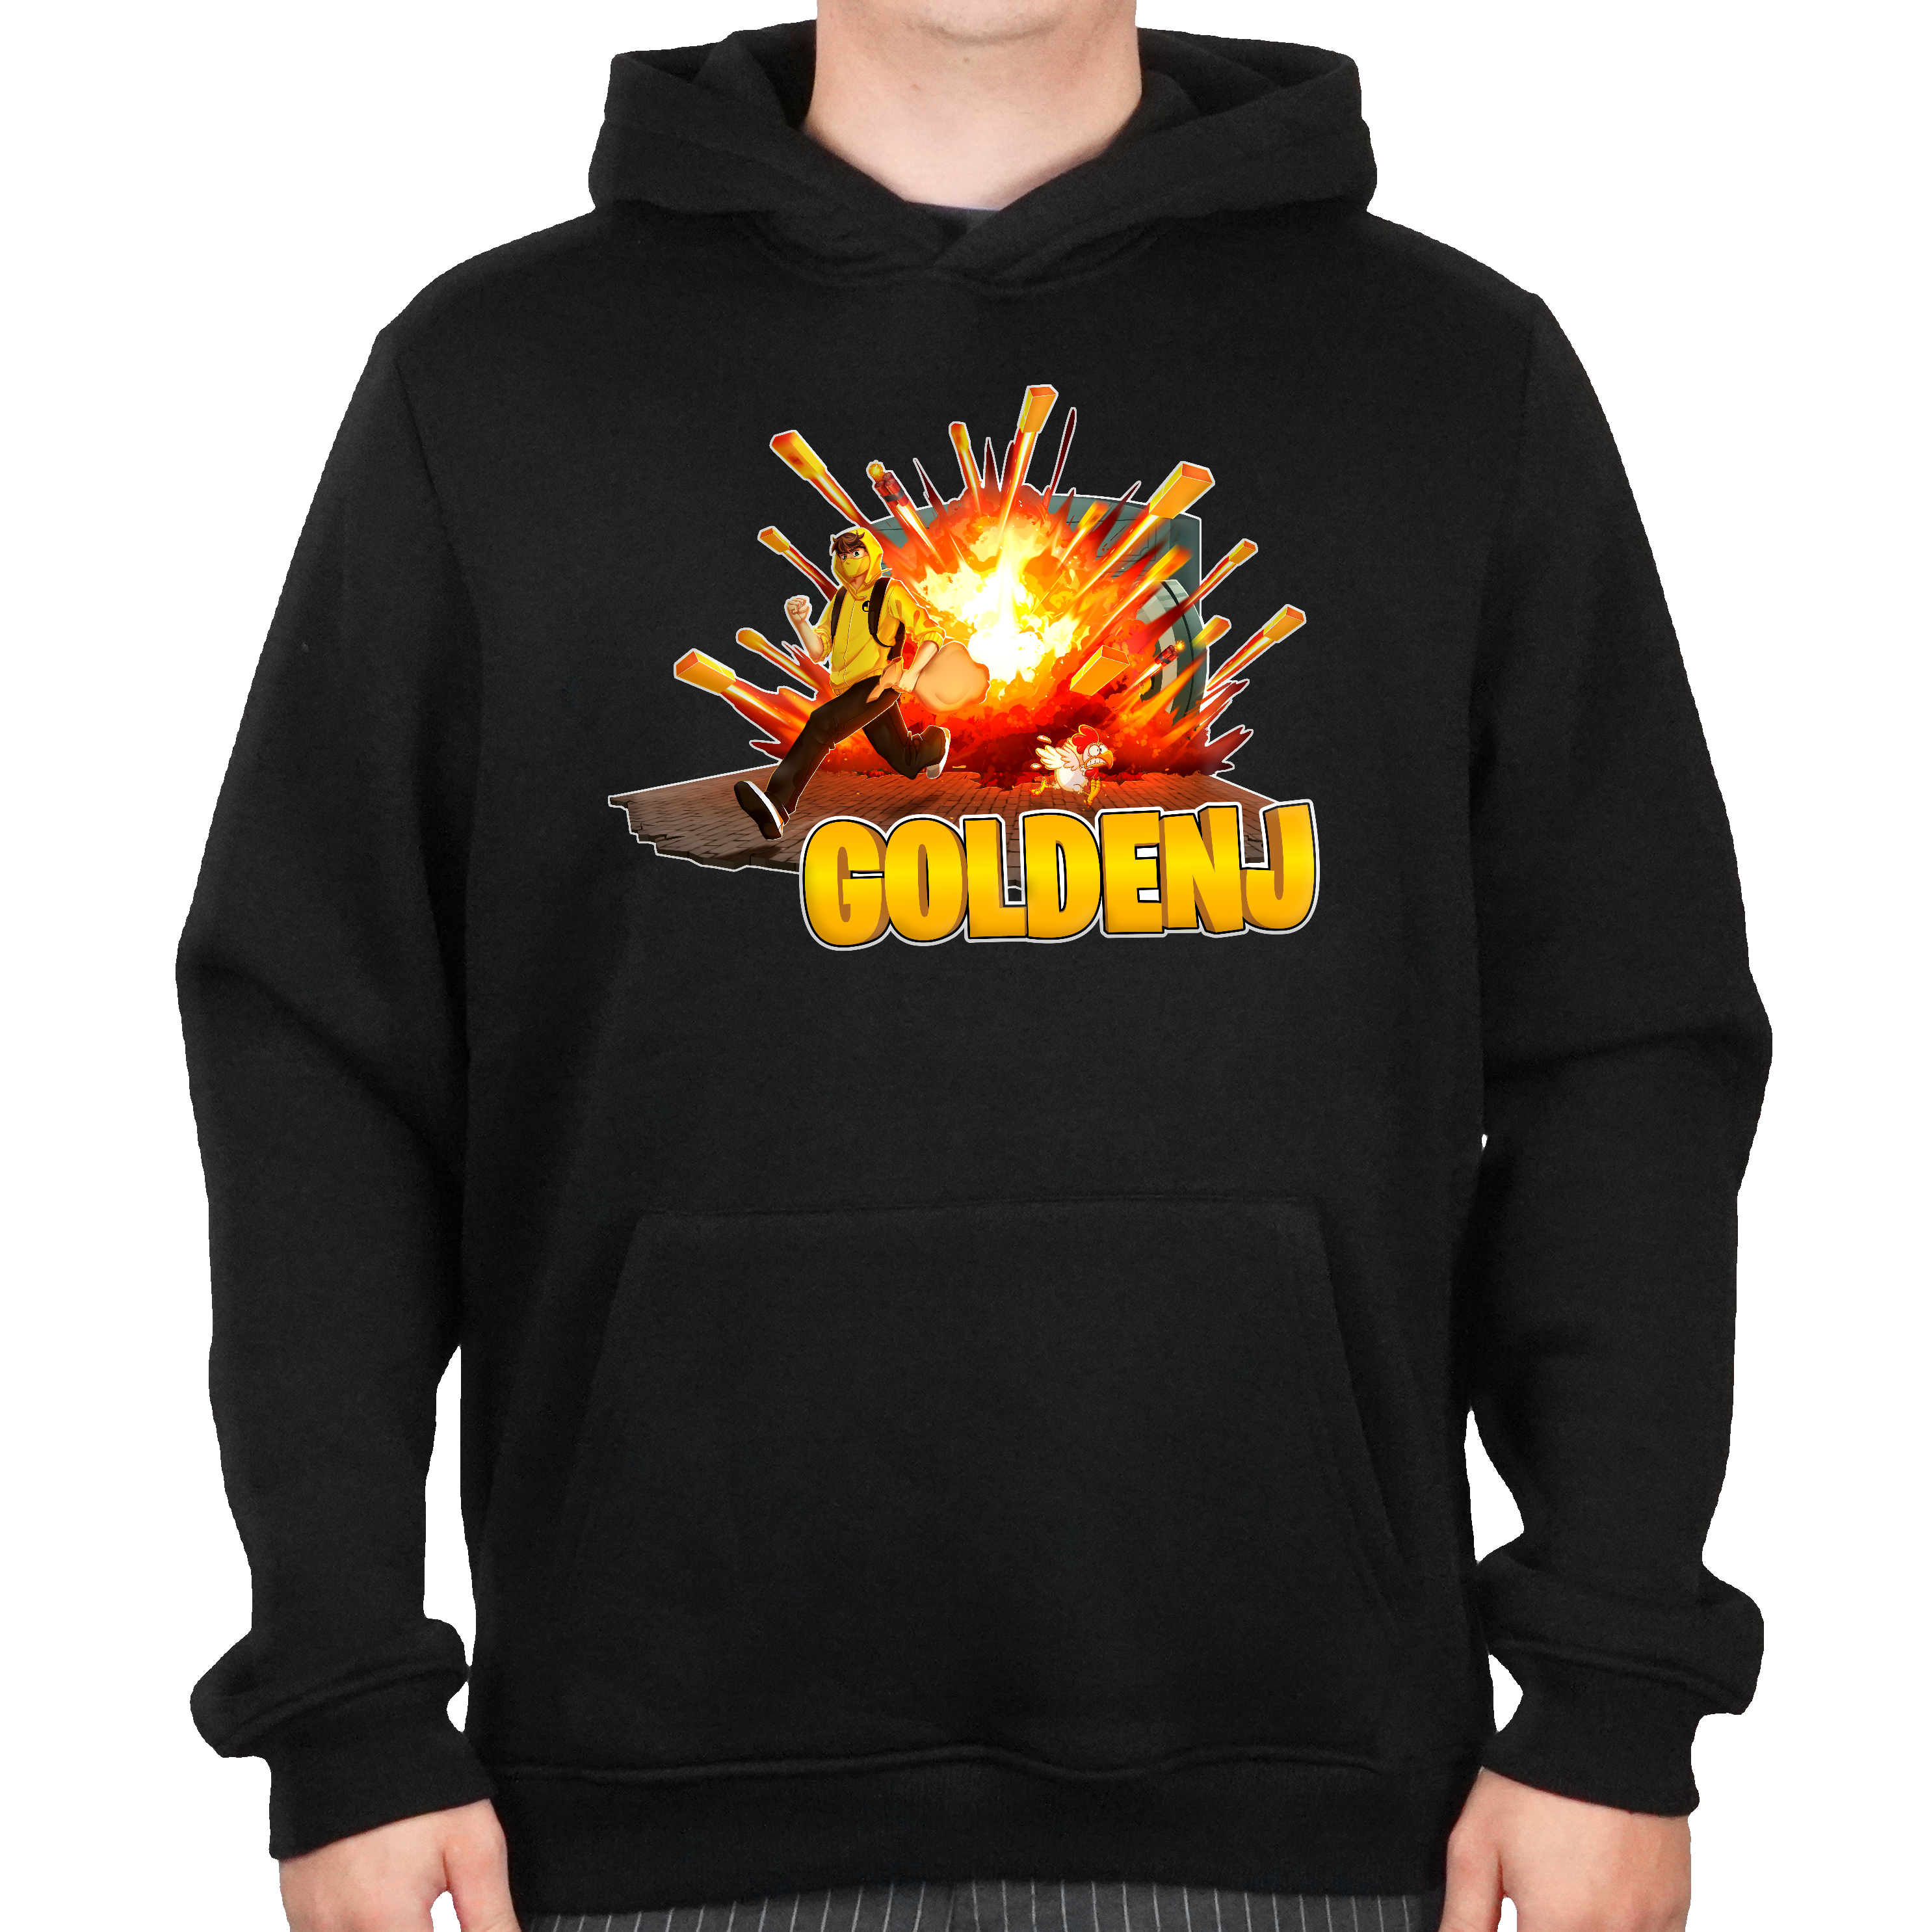 En mand iført en sort hoodie, hvor man kan se fronten, som har et GoldenJ mønster med en mand i en gul hoodie, som løber væk fra en eksplosion